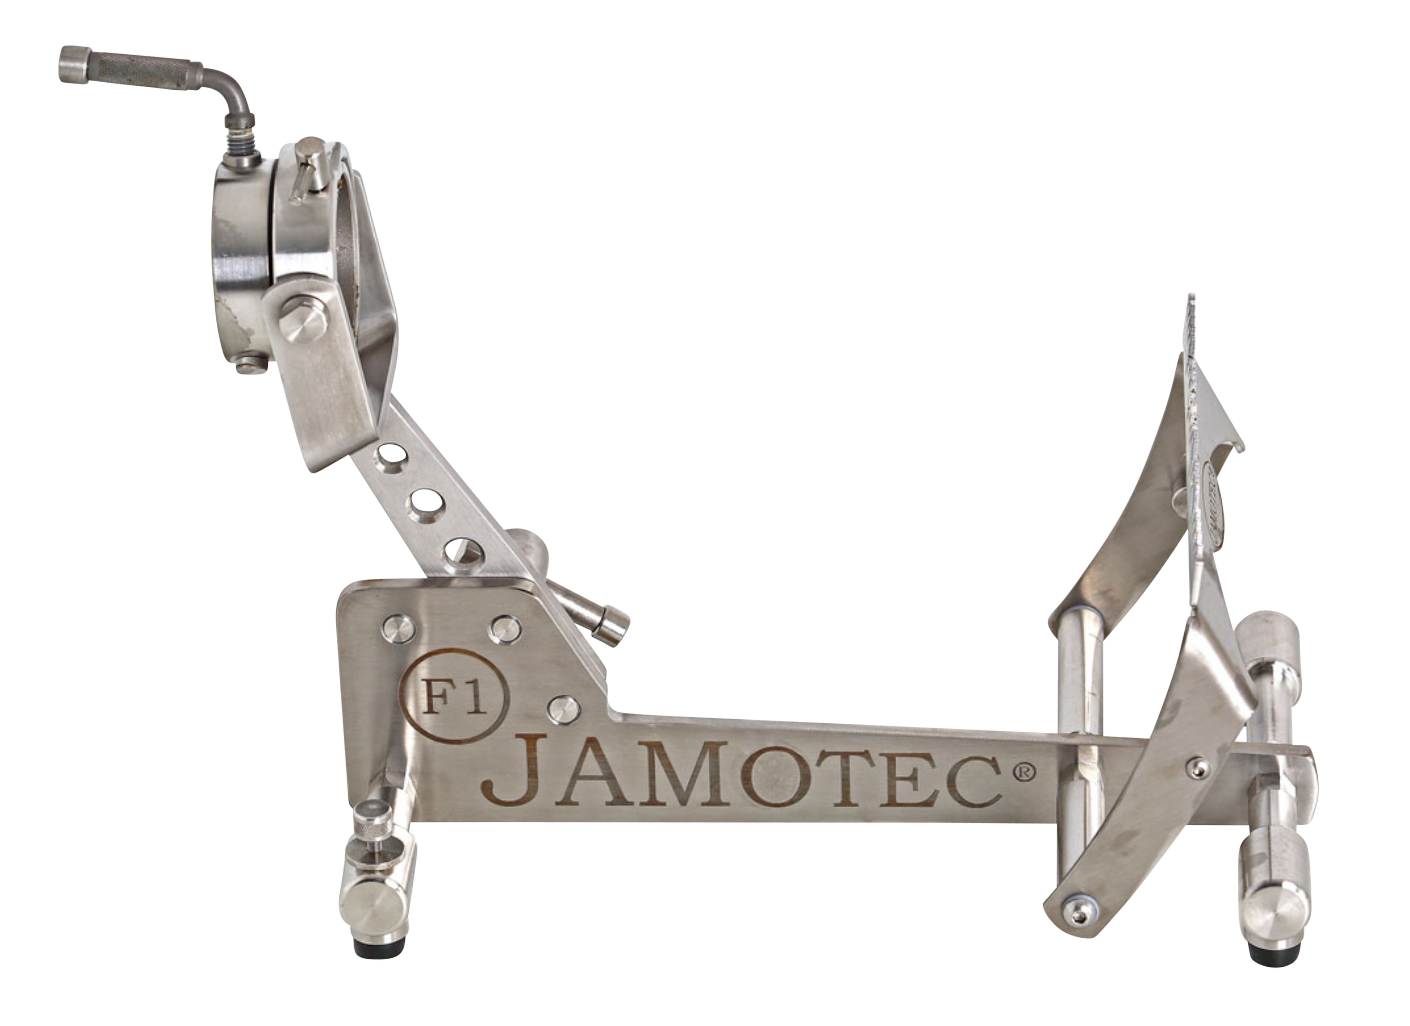 Comprar Soporte Jamonero Inox Pro Plegable Giratorio Online